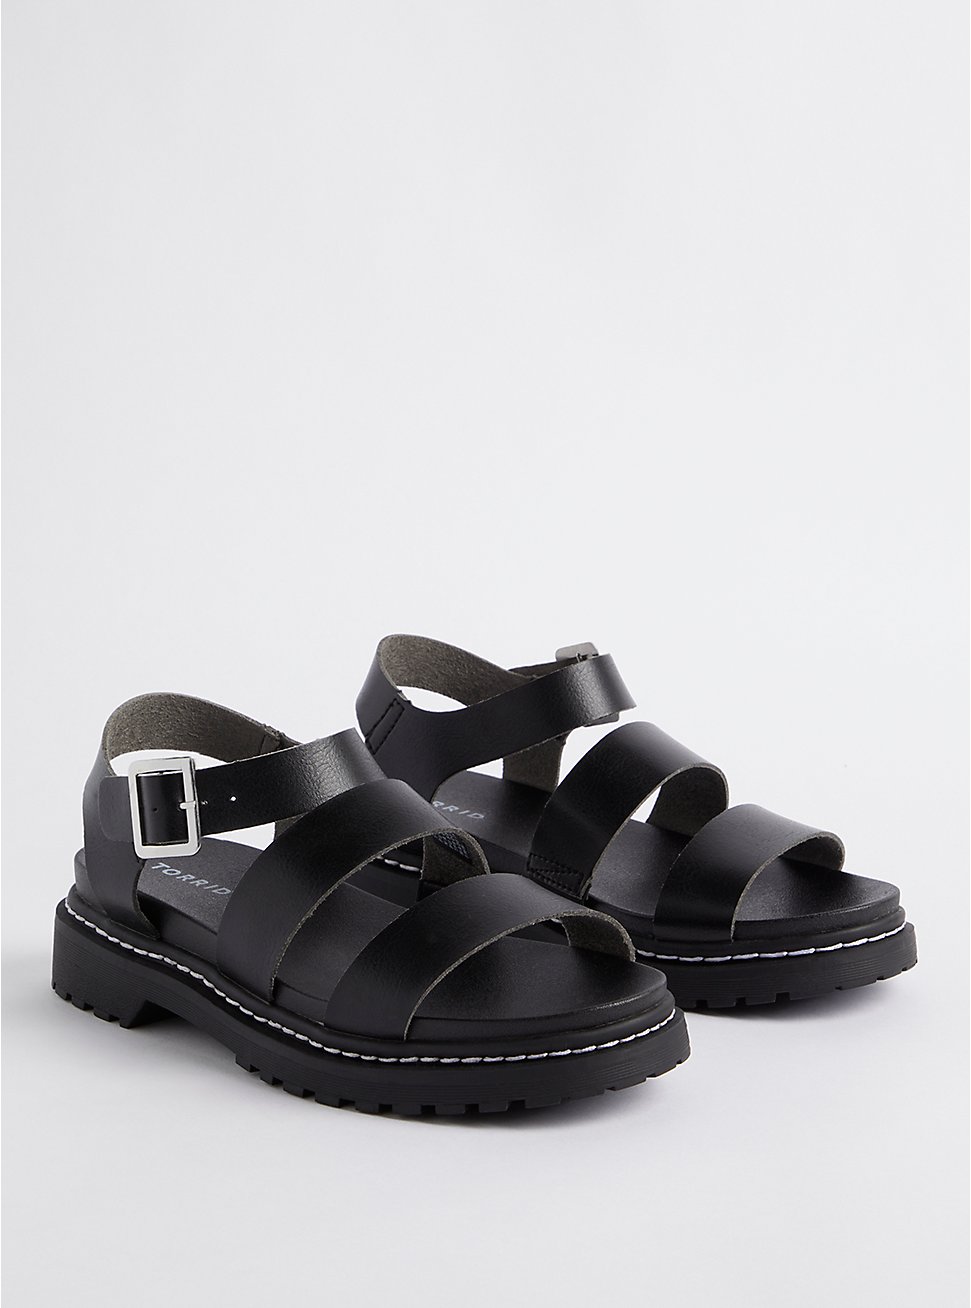 Plus Size Lug Sole Sandal - Faux Leather Black (WW), BLACK, hi-res